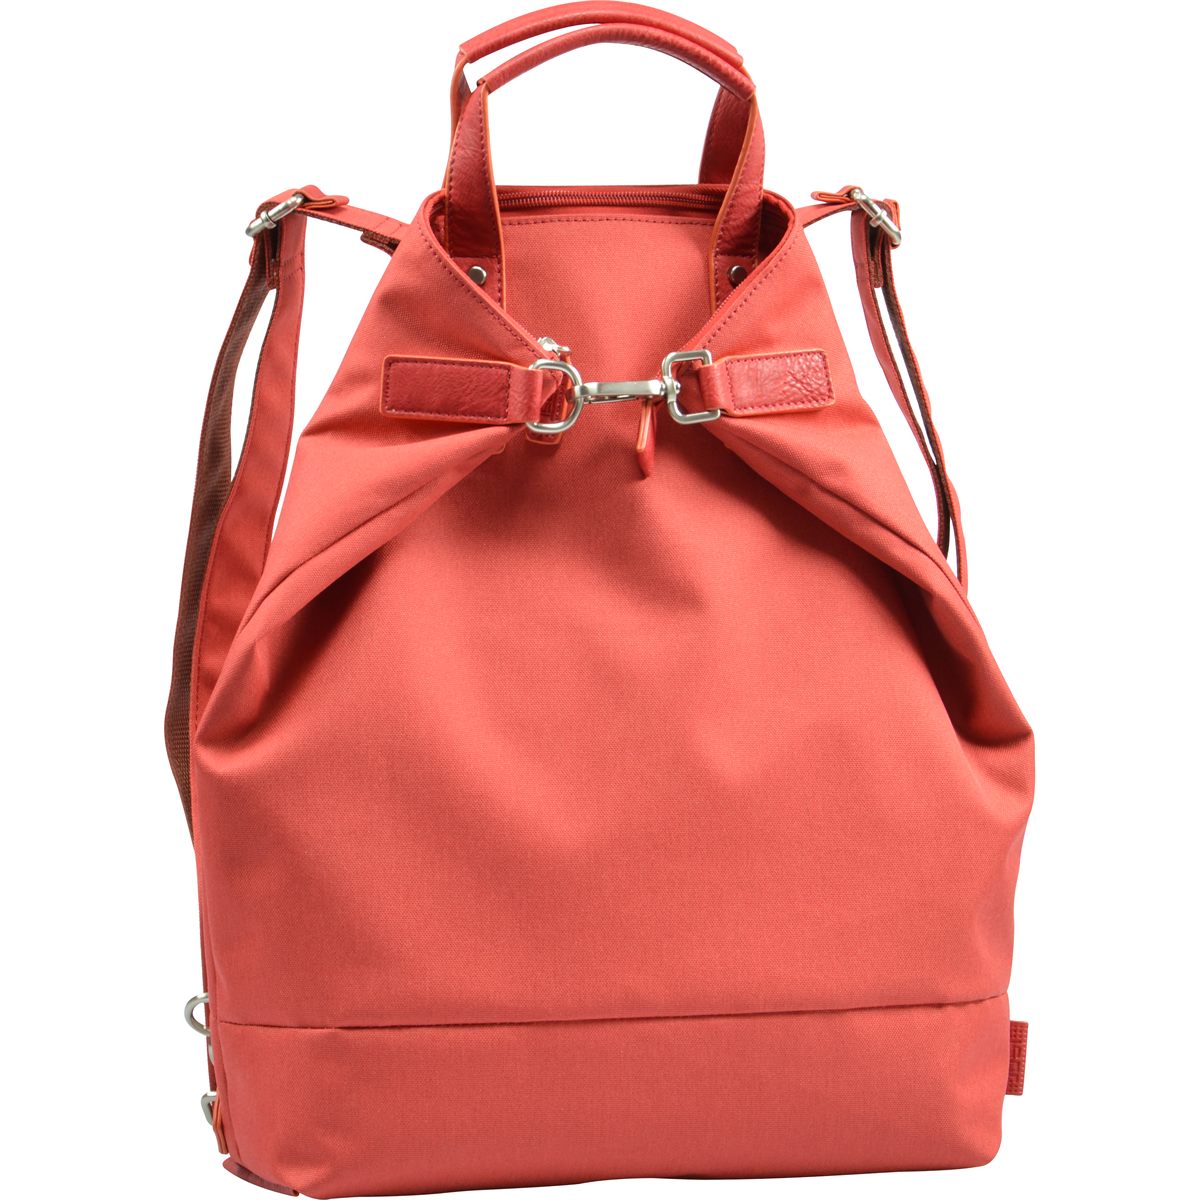 JOST-Rucksack-Taschen sind wandlungsfähig, geräumig und stilsicher.